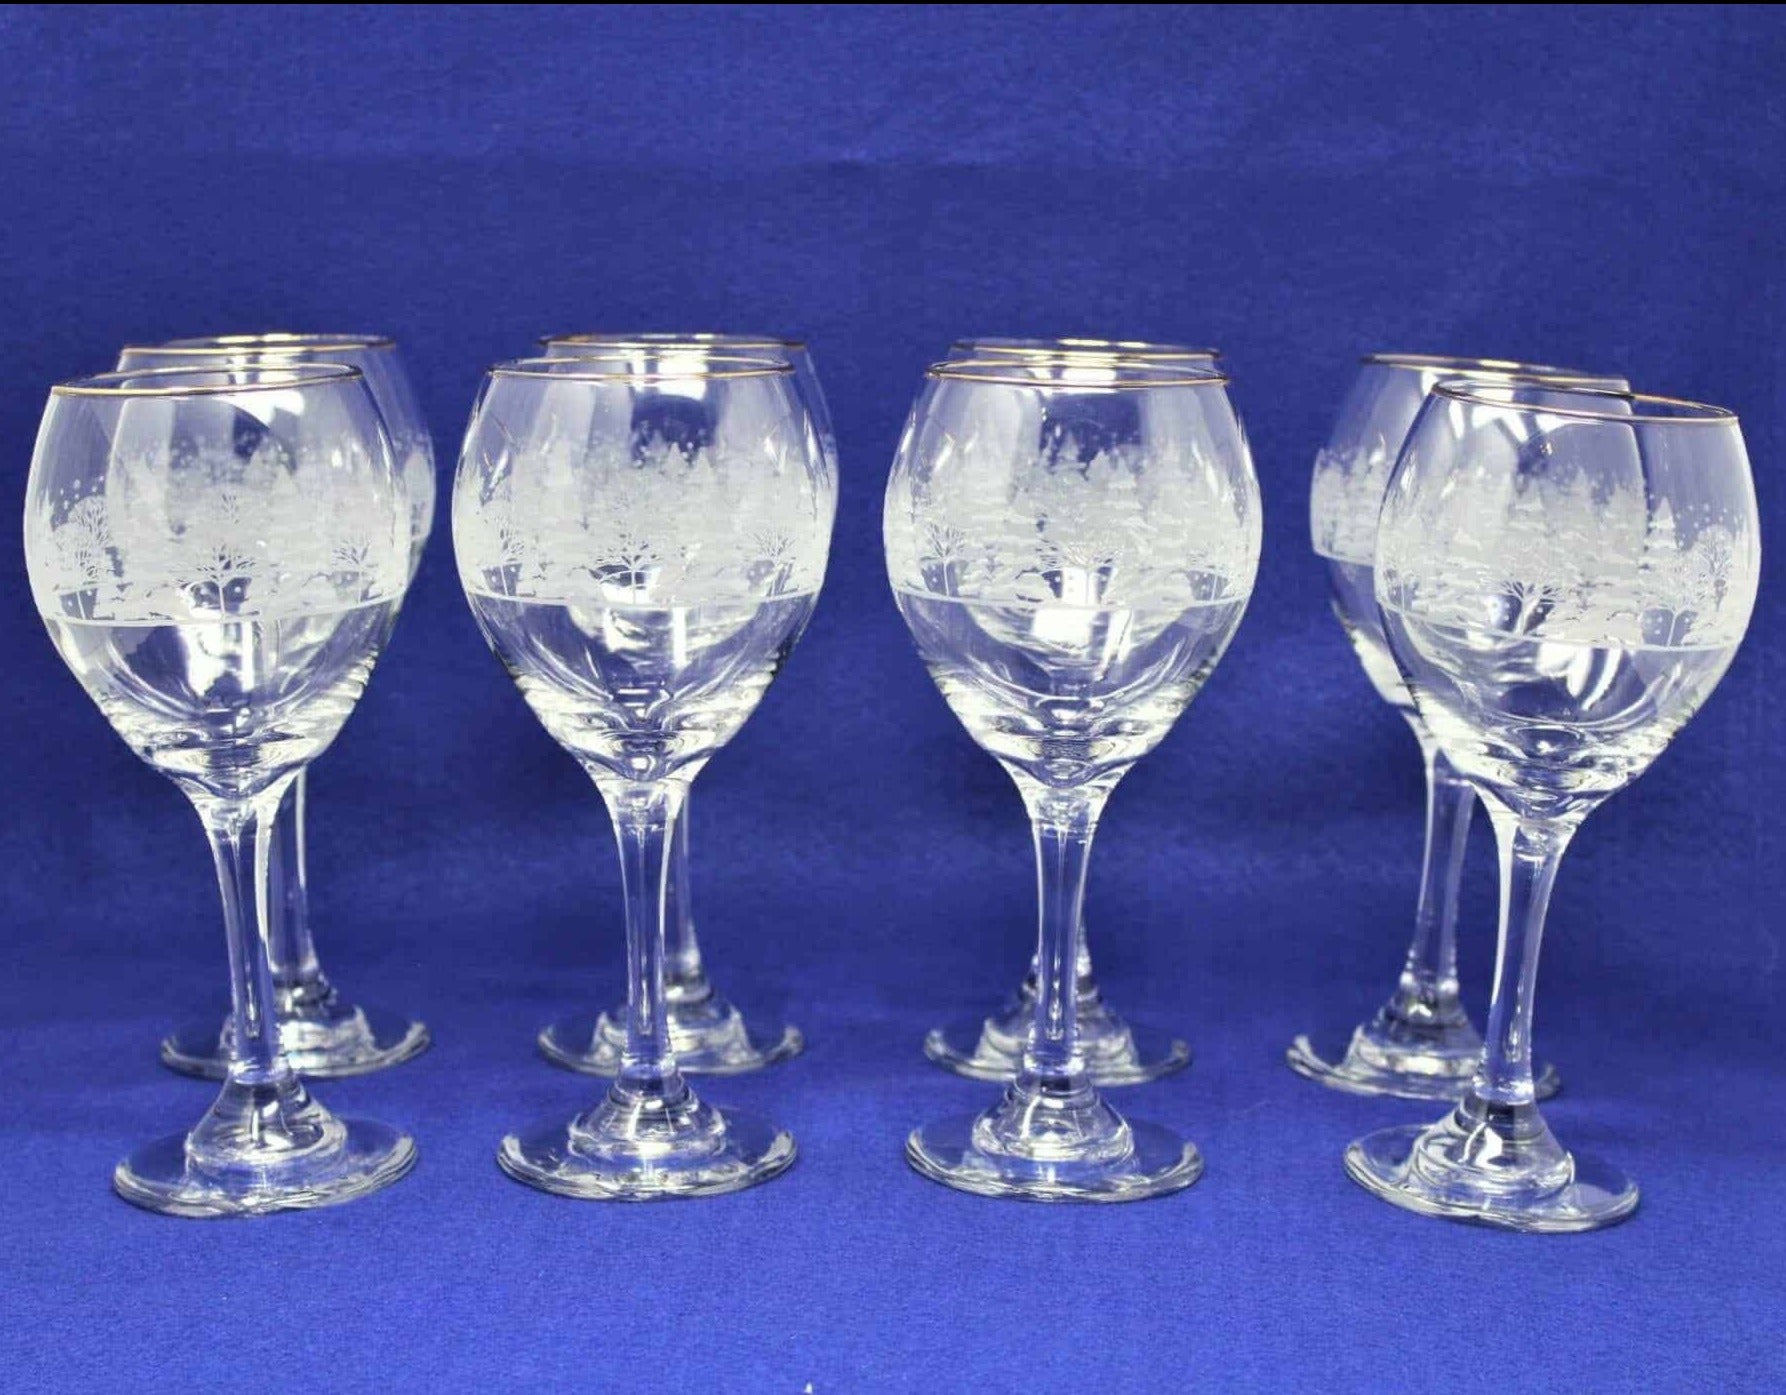 6 Vintage Etched Wine Glasses, Vintage 5 oz Claret Wine Glasses